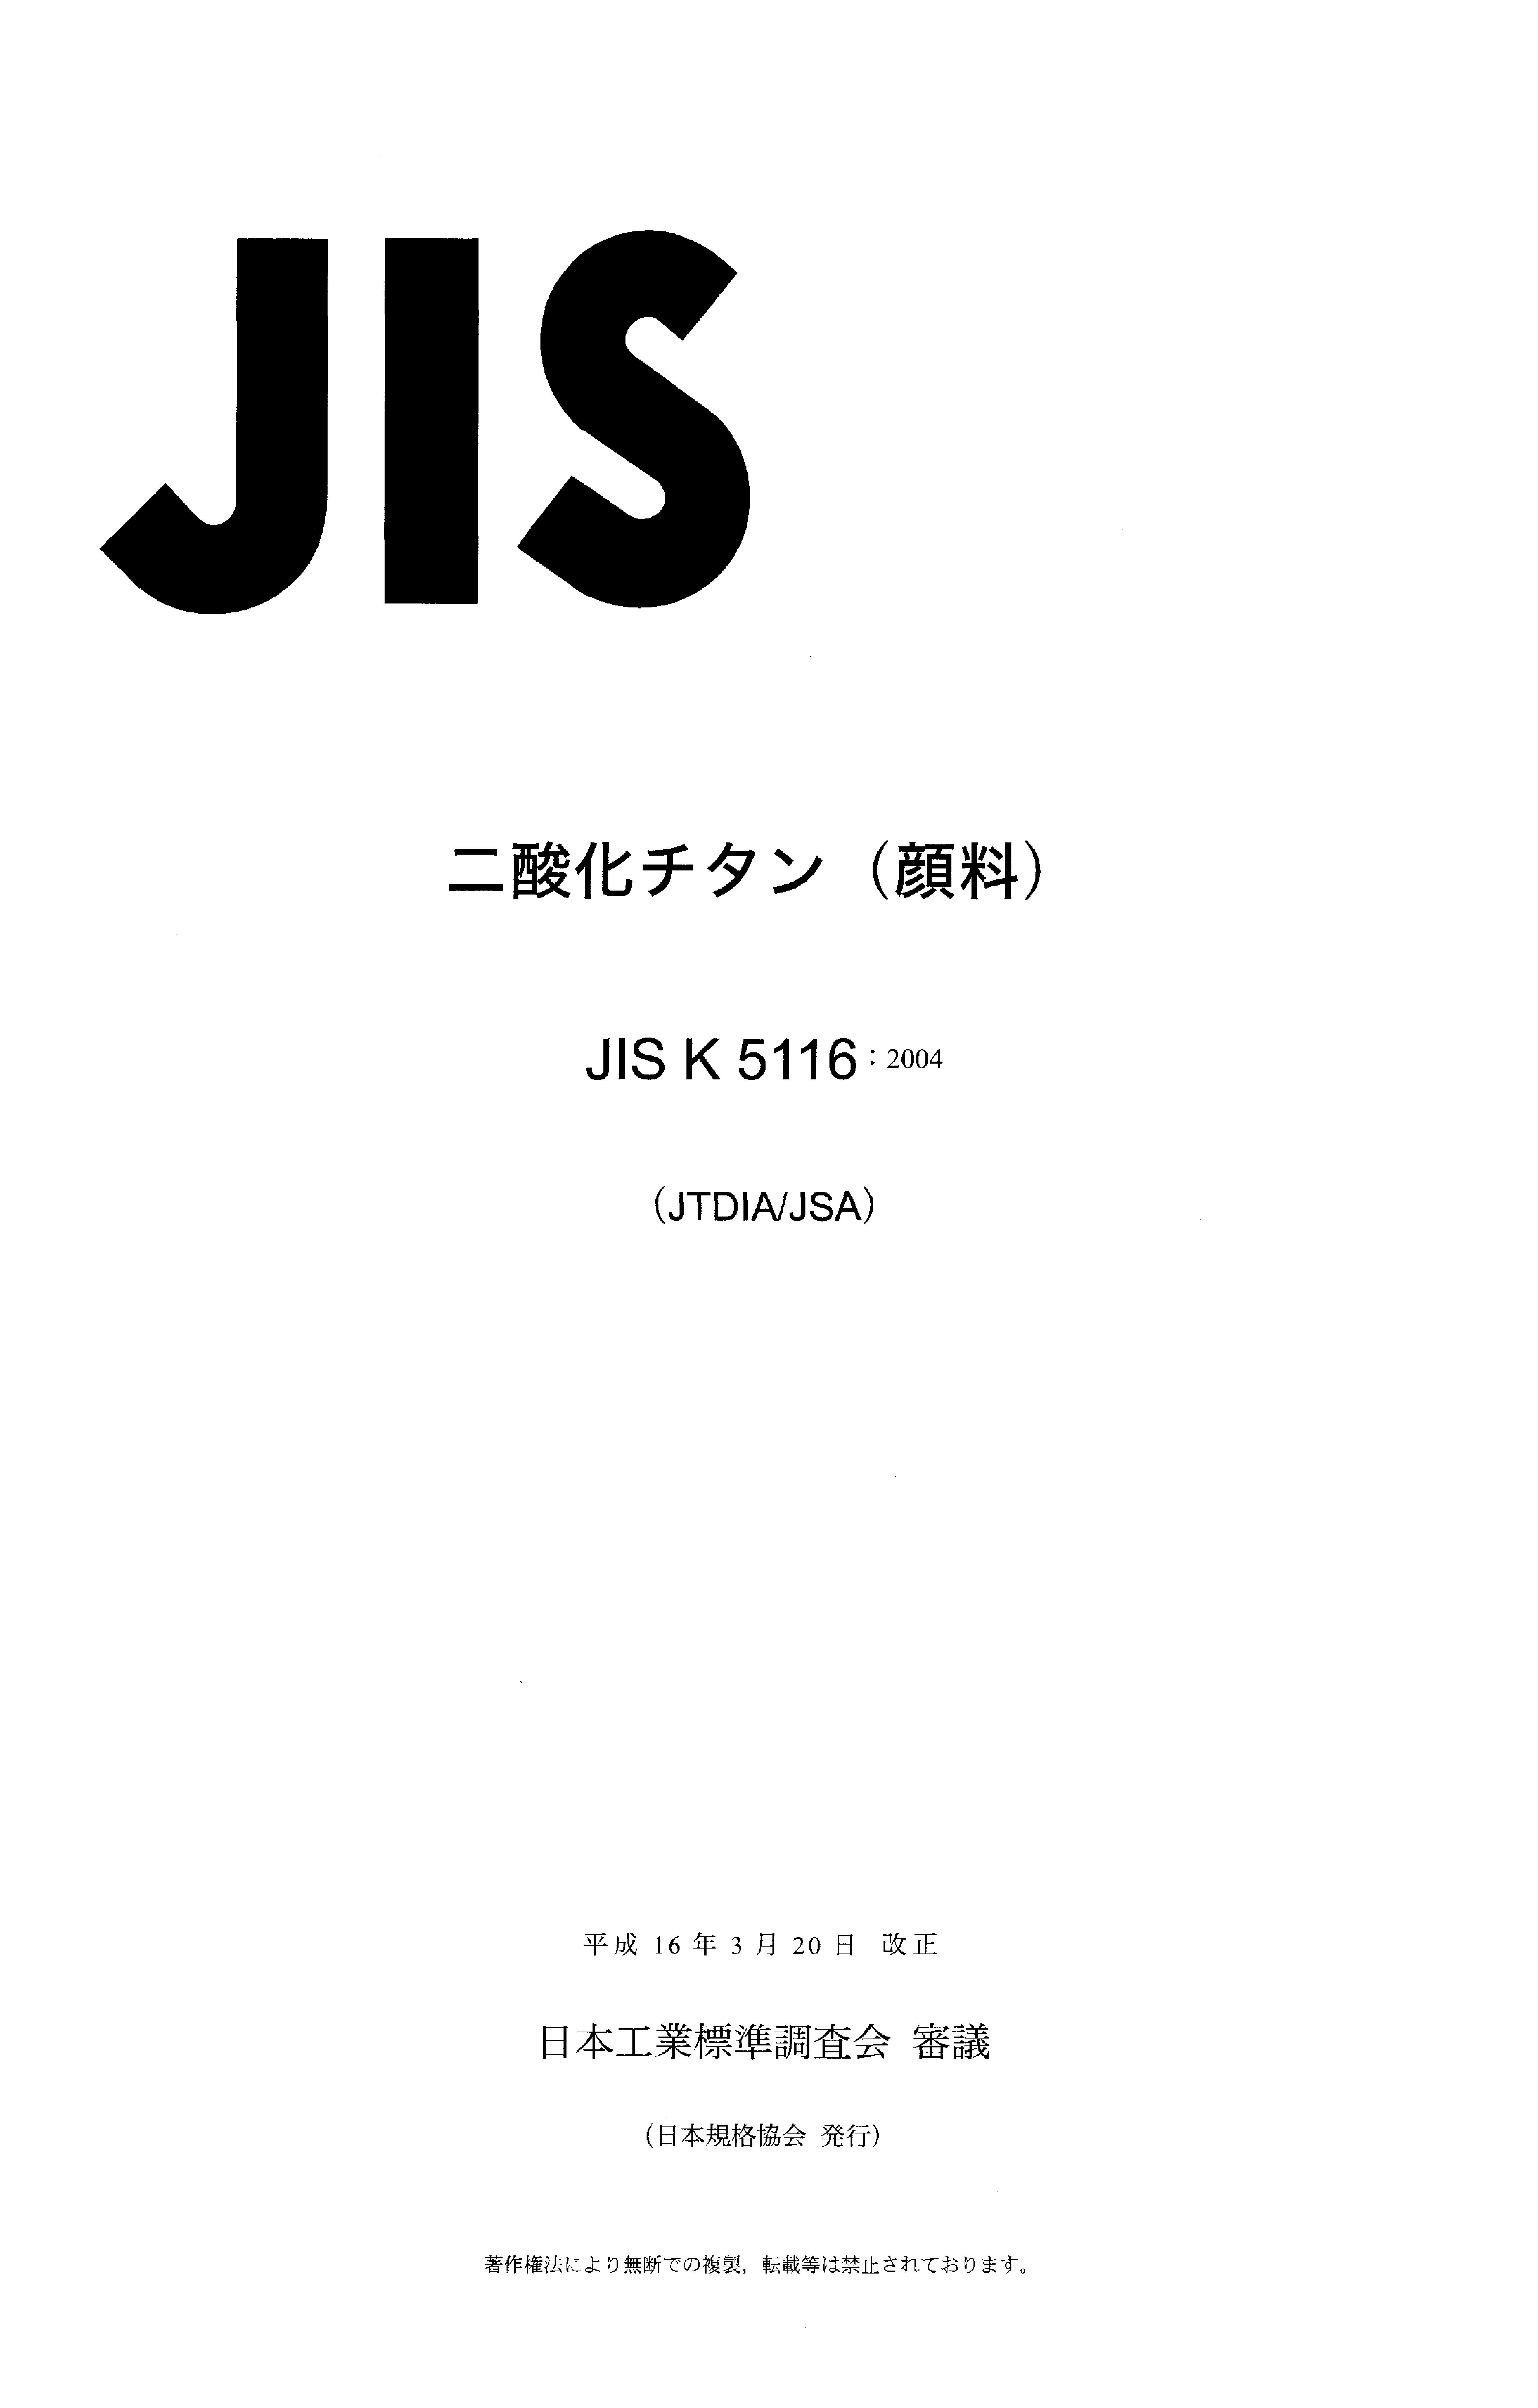 JIS K 5116:2004封面图